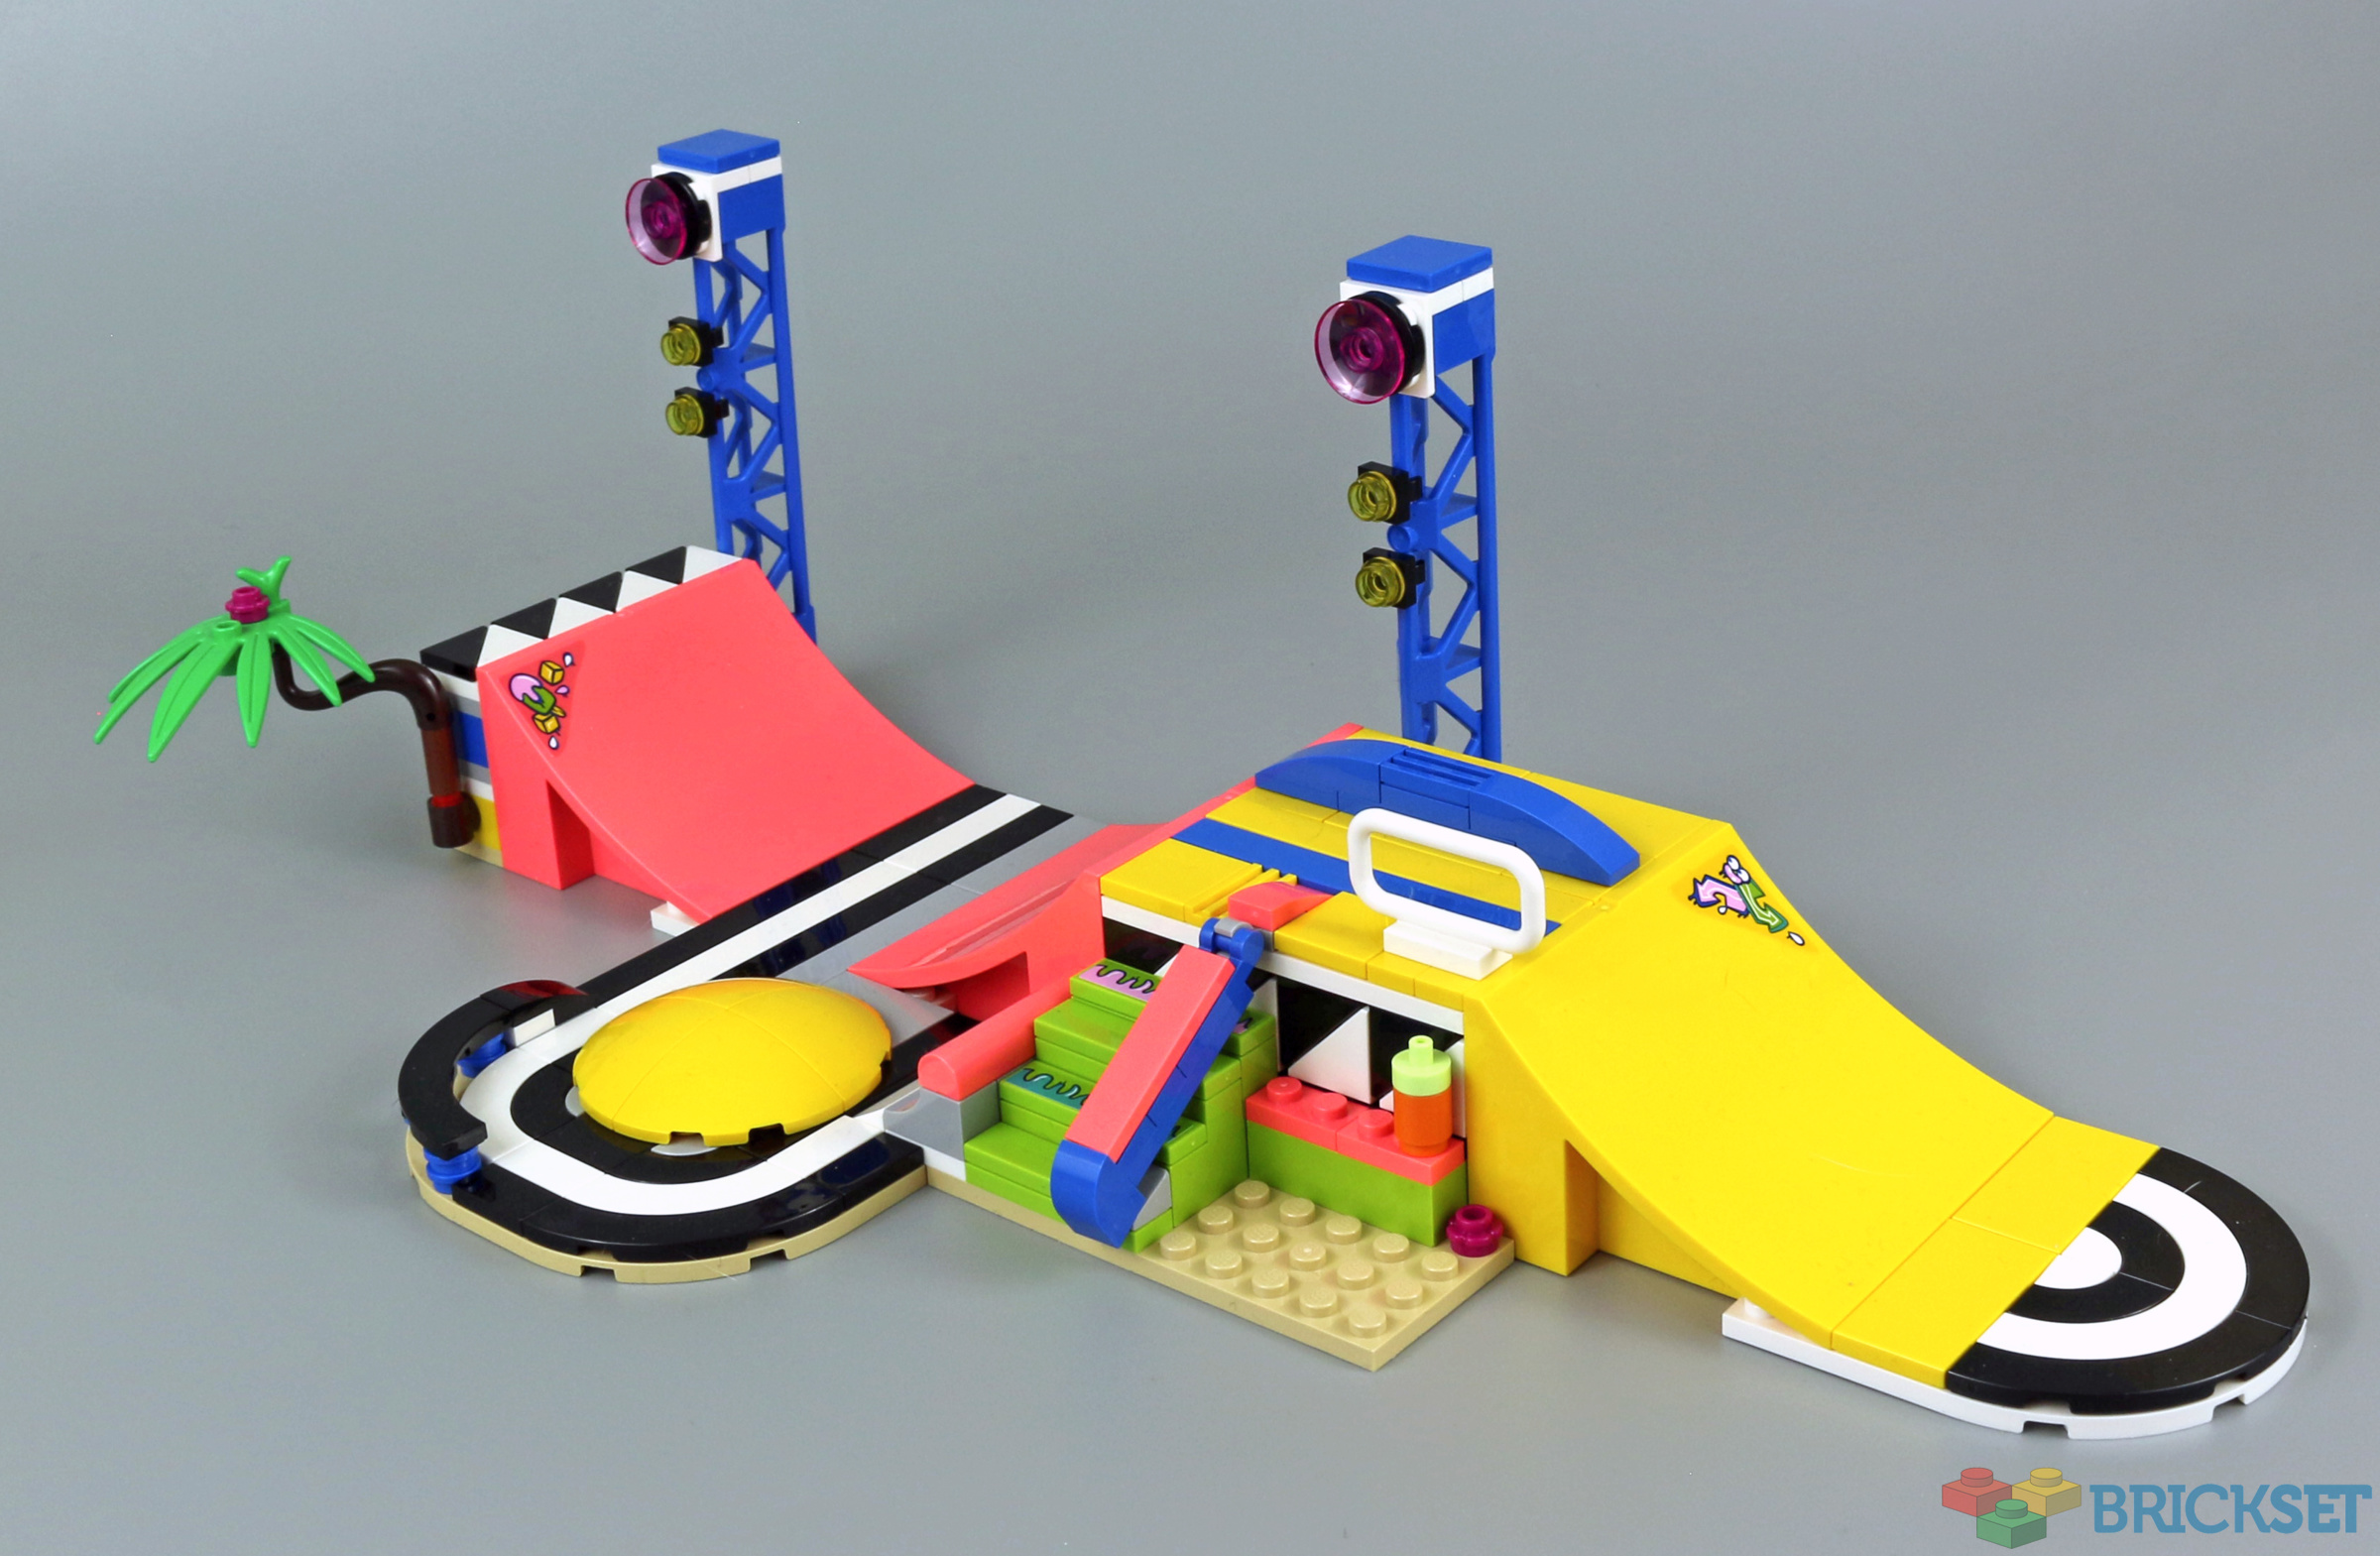 LEGO 41751 Skate Park review